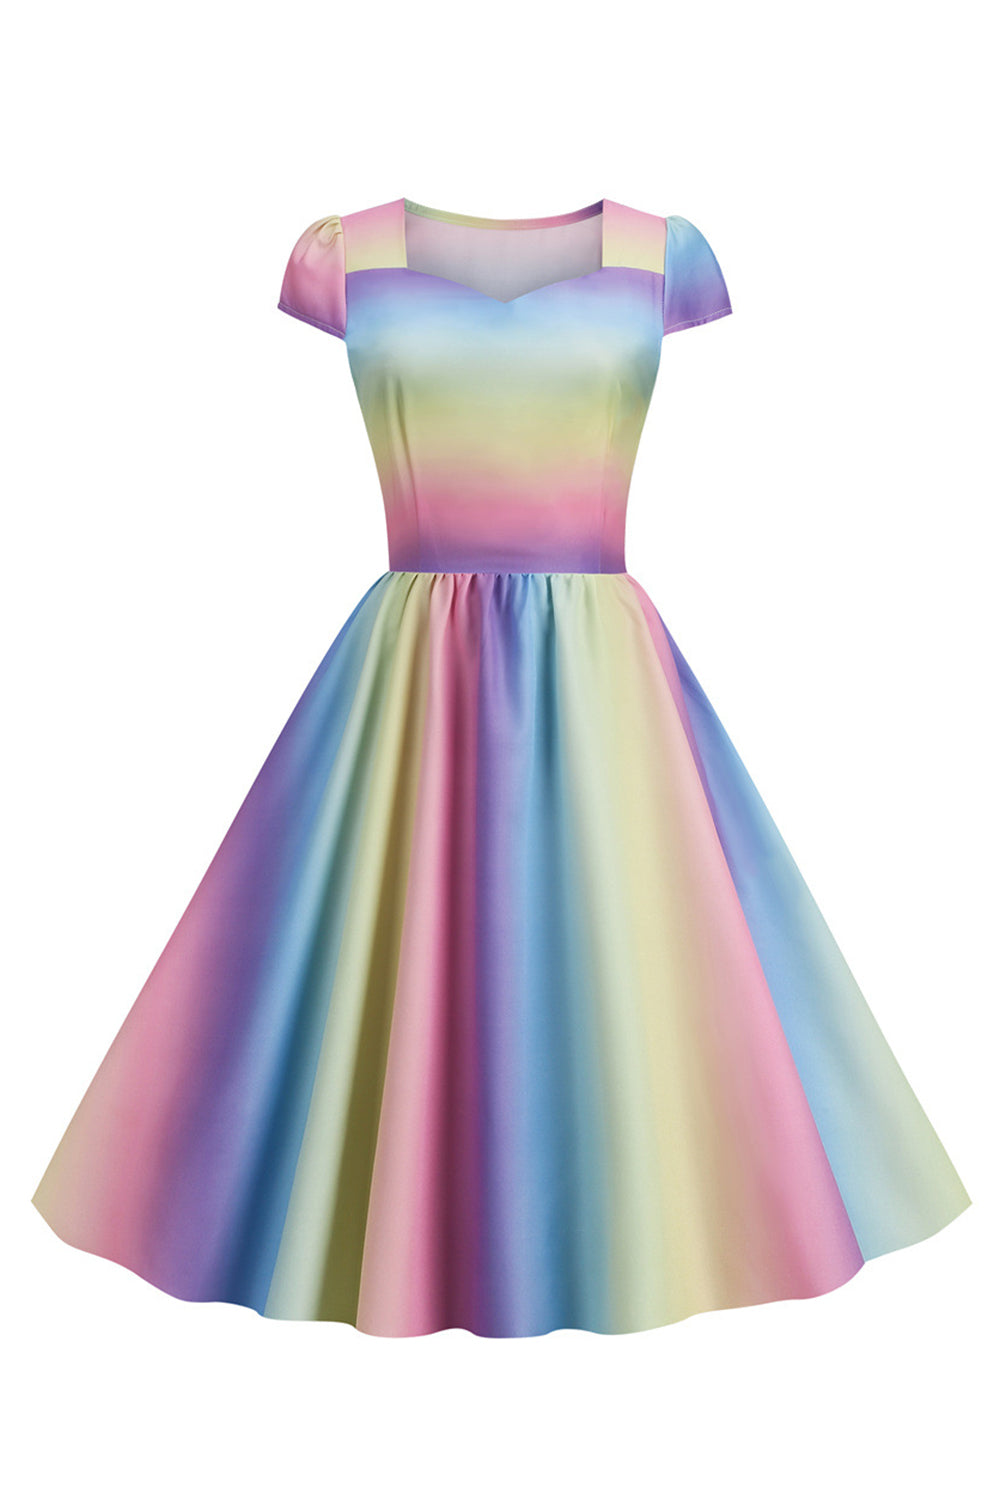 Colorful A Line Vintage 1950s Dress